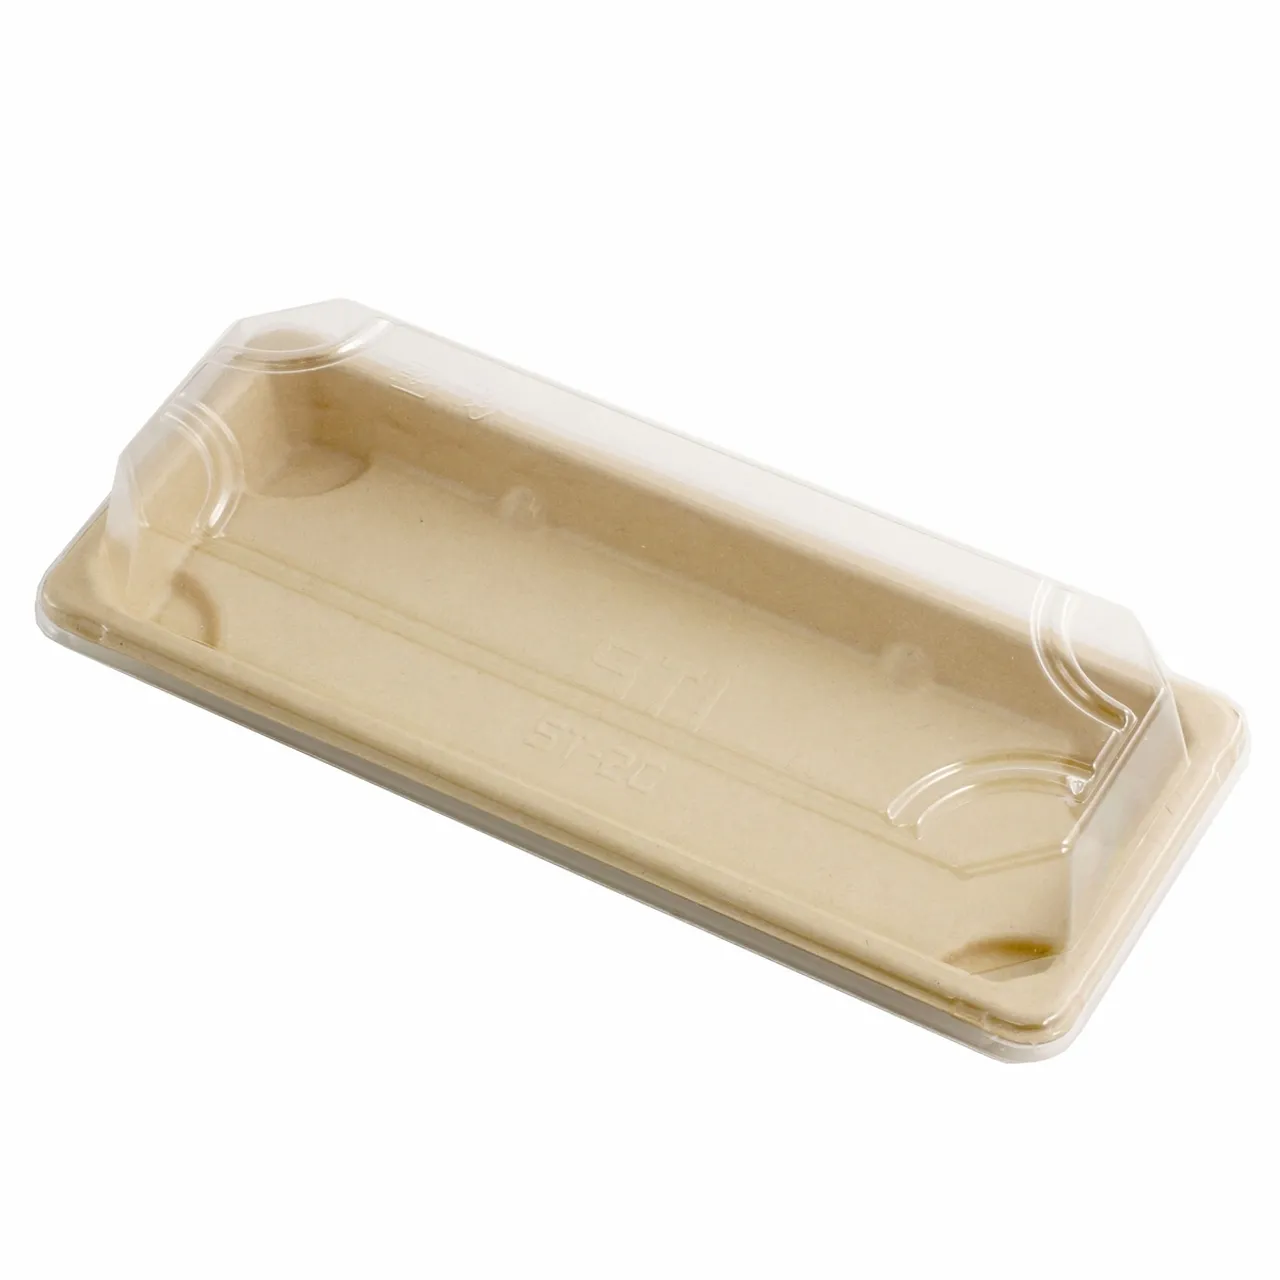 Bandeja desechable Biodegradable de alta calidad para Sushi, contenedor de papel para bagazo de caña de azúcar, bandeja de Sushi con tapa para mascotas